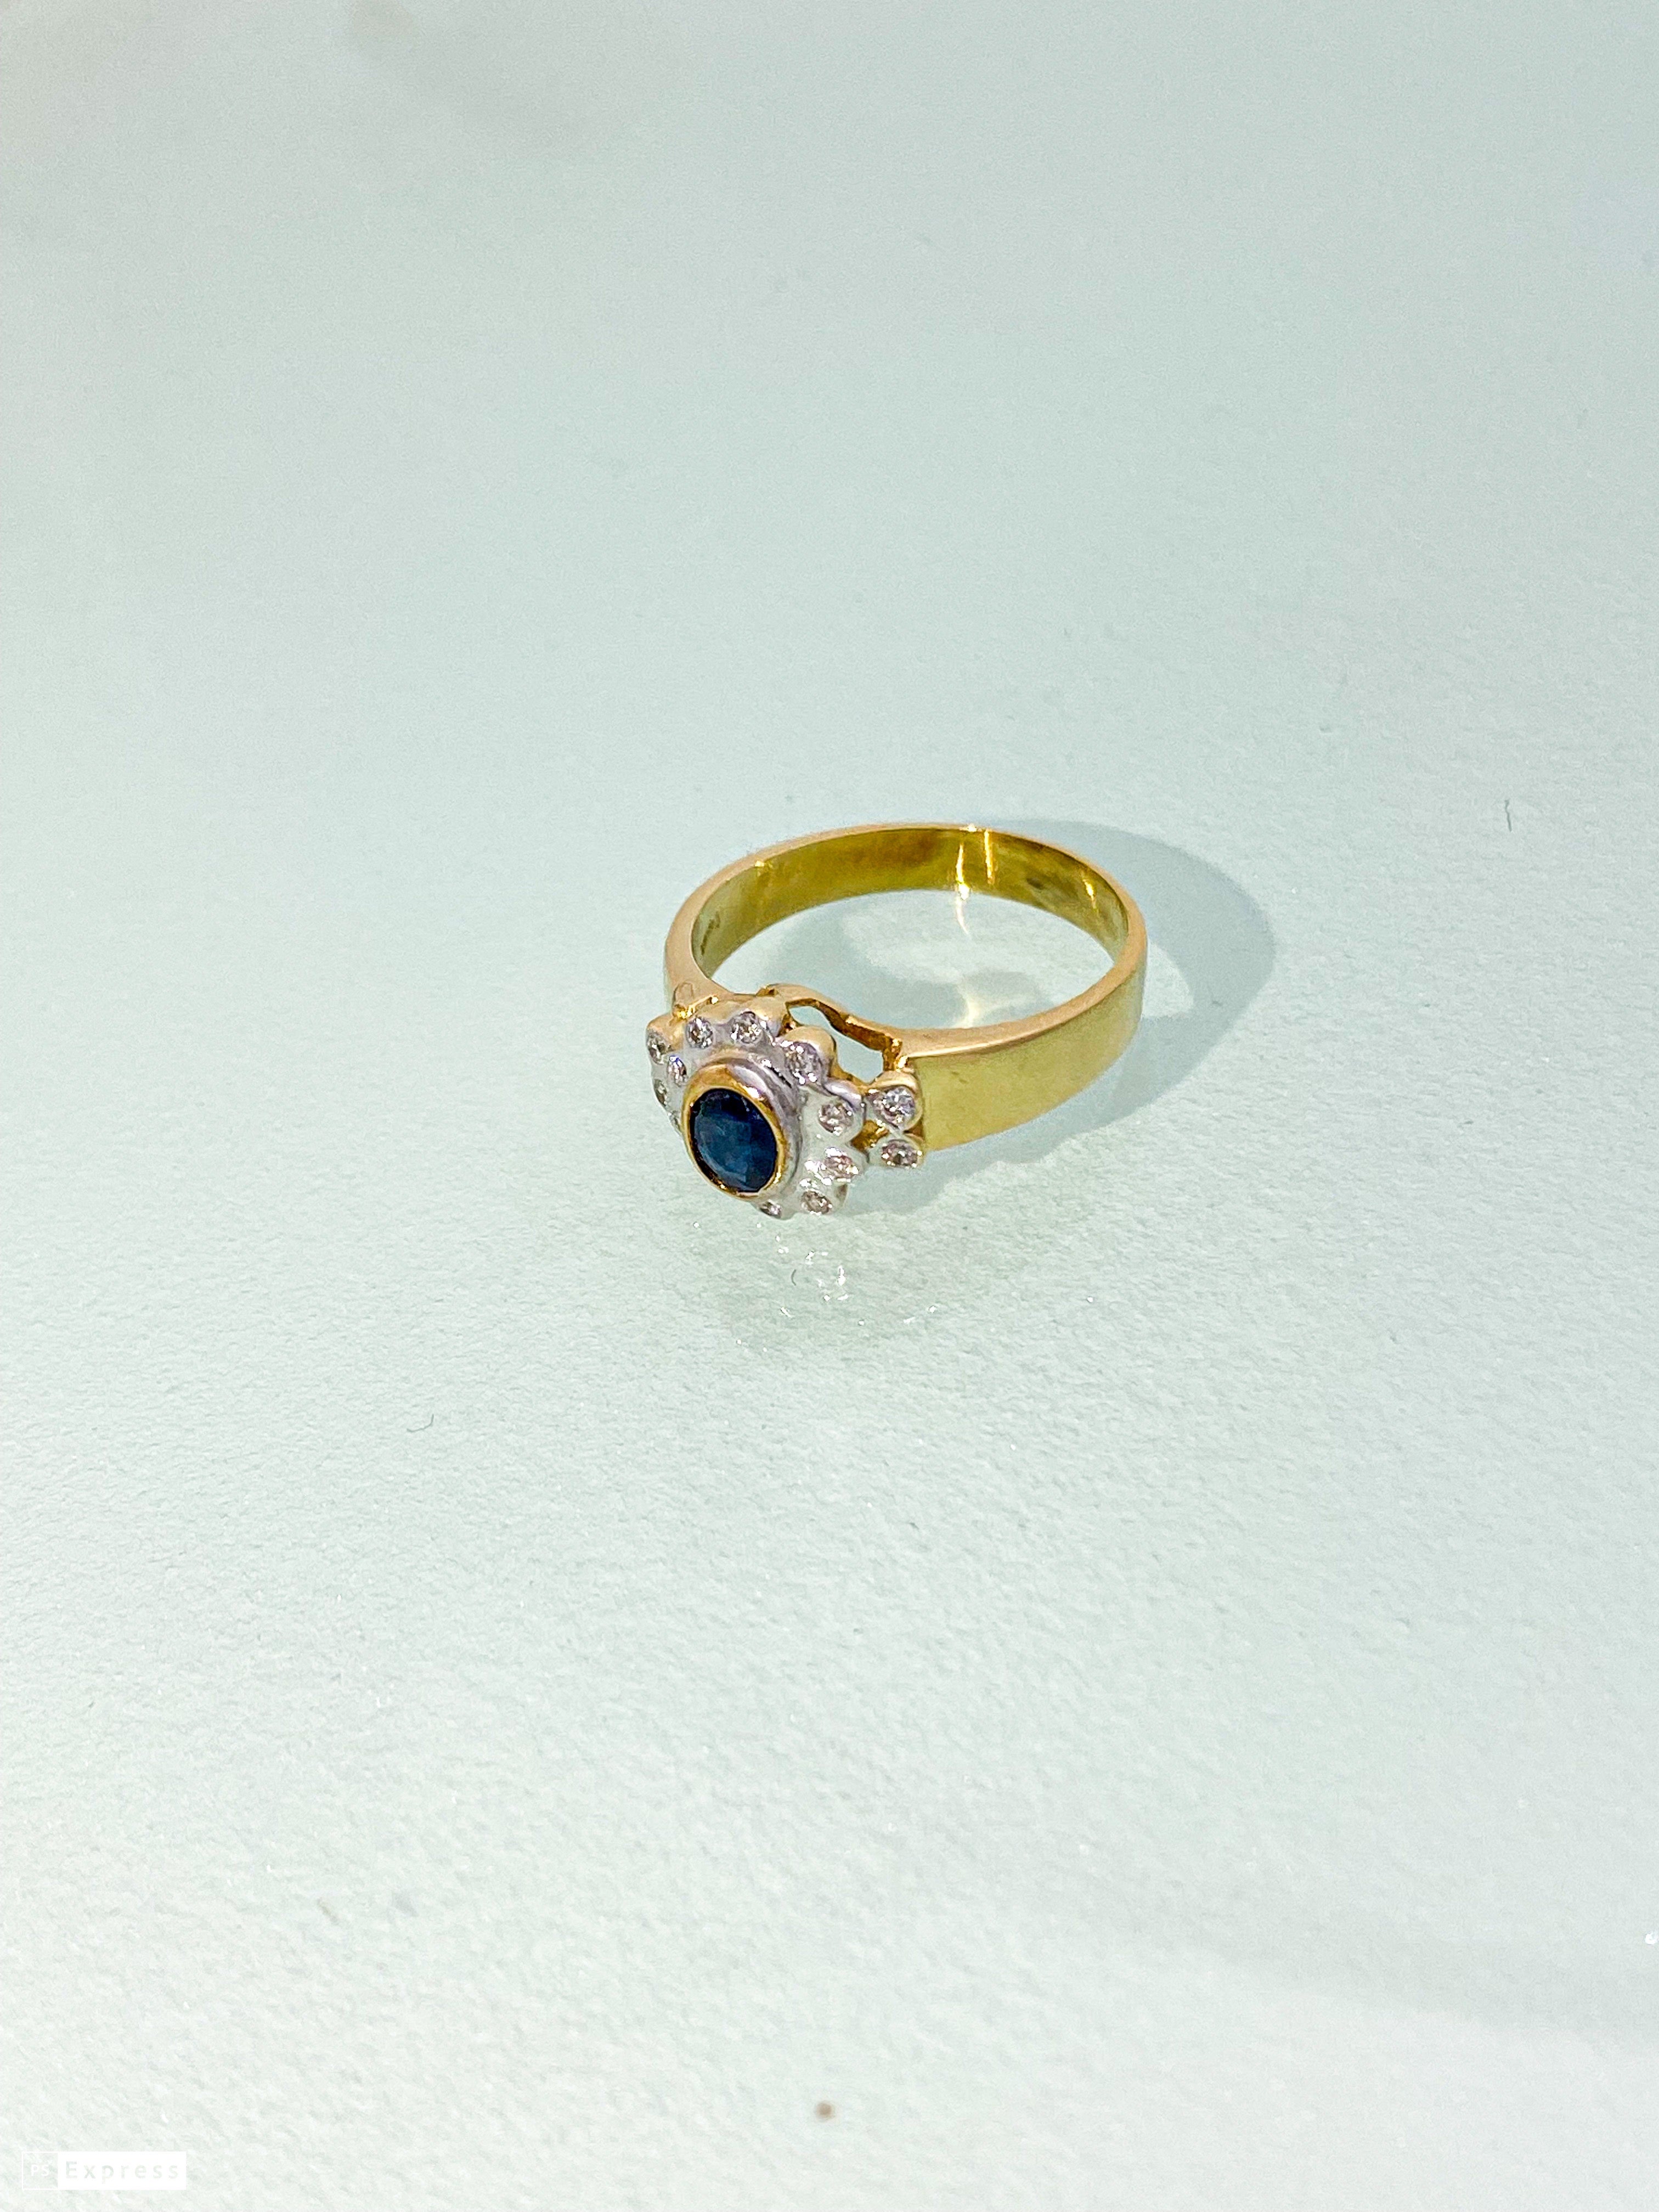 טבעת זהב צהוב 14 קארט עם פרח בזהב לבן אבן מרכזית ספיר ומסביב שיבוץ יהלומים